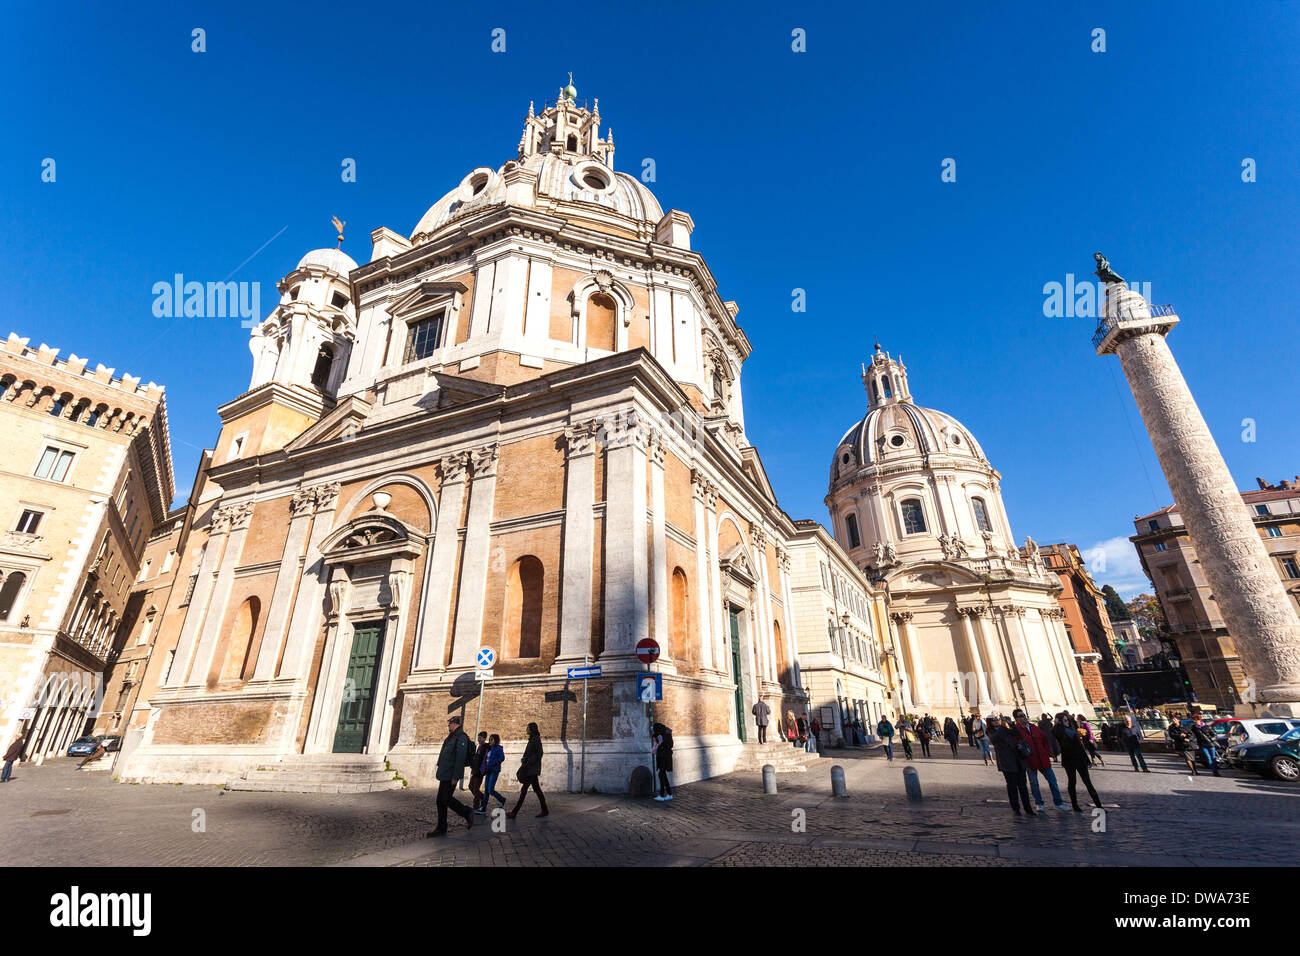 La Colonne Trajane et église de Santa Maria di Loreto, Rome, Italie. Banque D'Images